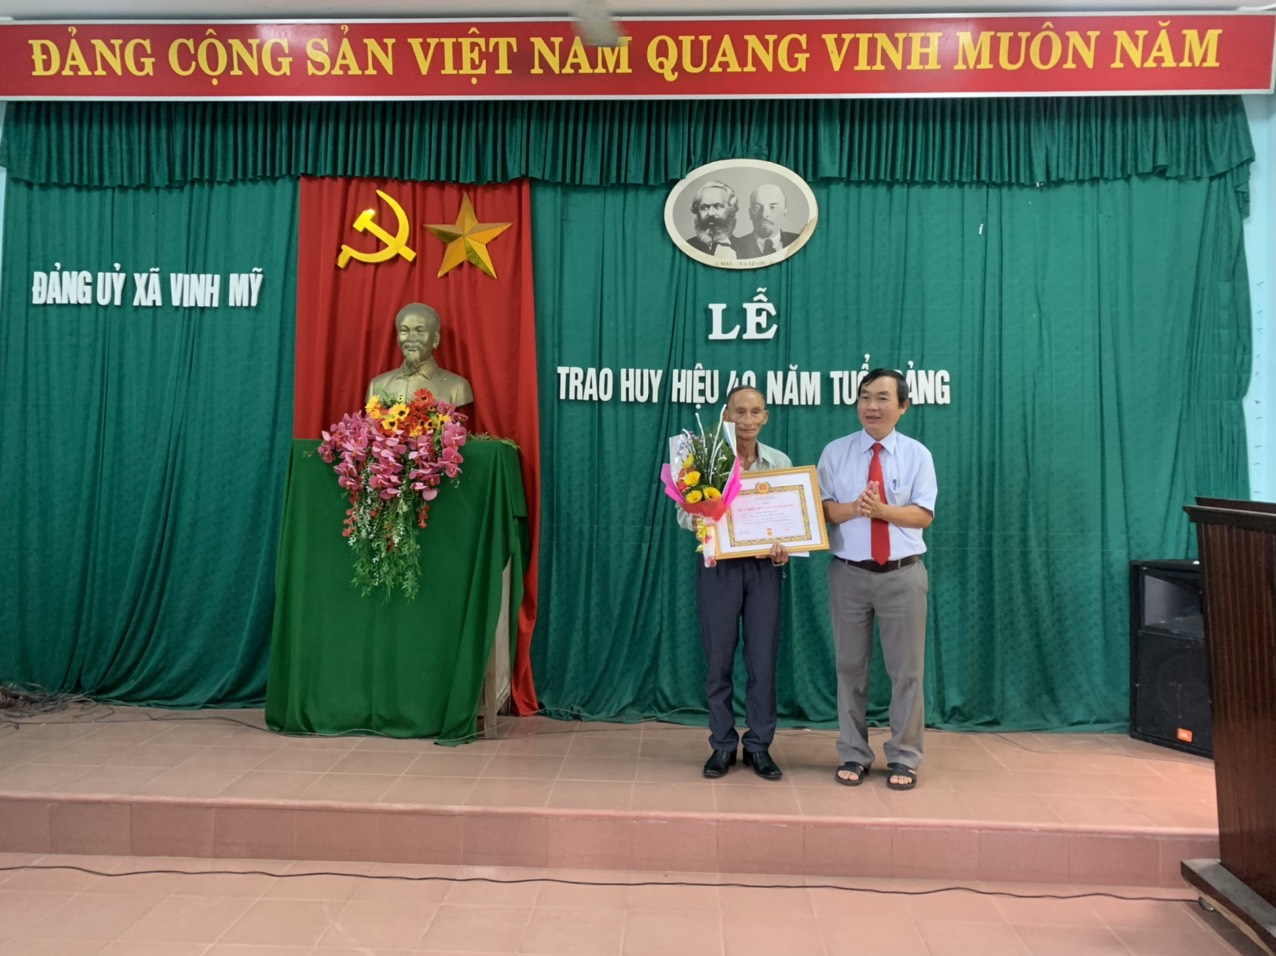 Đảng viên là những người dẫn đầu và định hình tương lai của đất nước. Hãy cùng khám phá những hình ảnh tuyệt đẹp về những người này, và tìm hiểu về những đóng góp vượt trội của họ cho đất nước và con người. Với bức ảnh này, bạn sẽ nhận ra sức ảnh hưởng của Đảng đối với mỗi người Việt Nam.